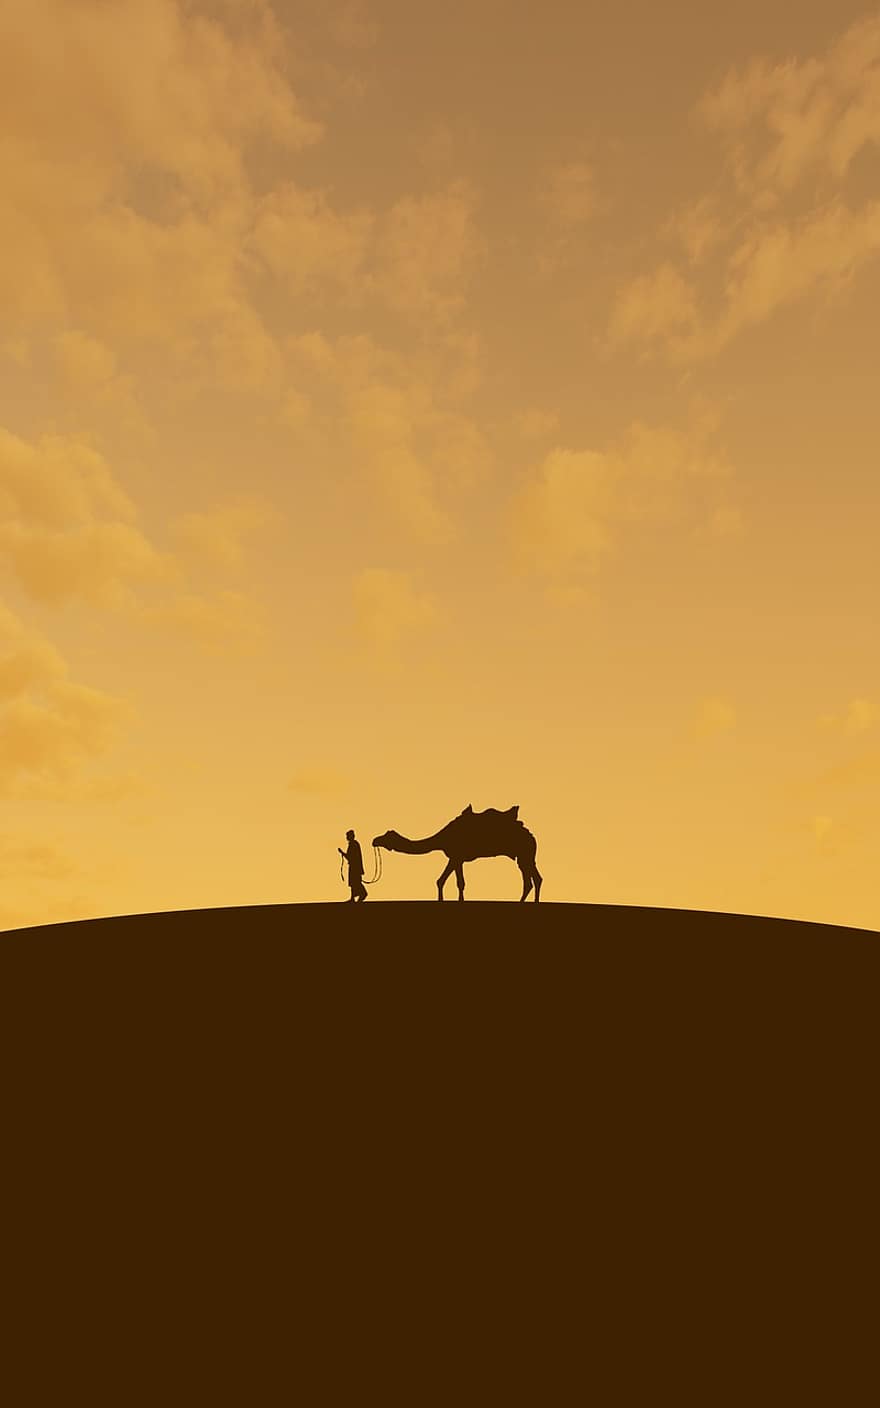 έρημος, καμήλα, πορτοκάλι, αραβικός, σαφάρι, ζώο, ουρανός, Ανθρωποι